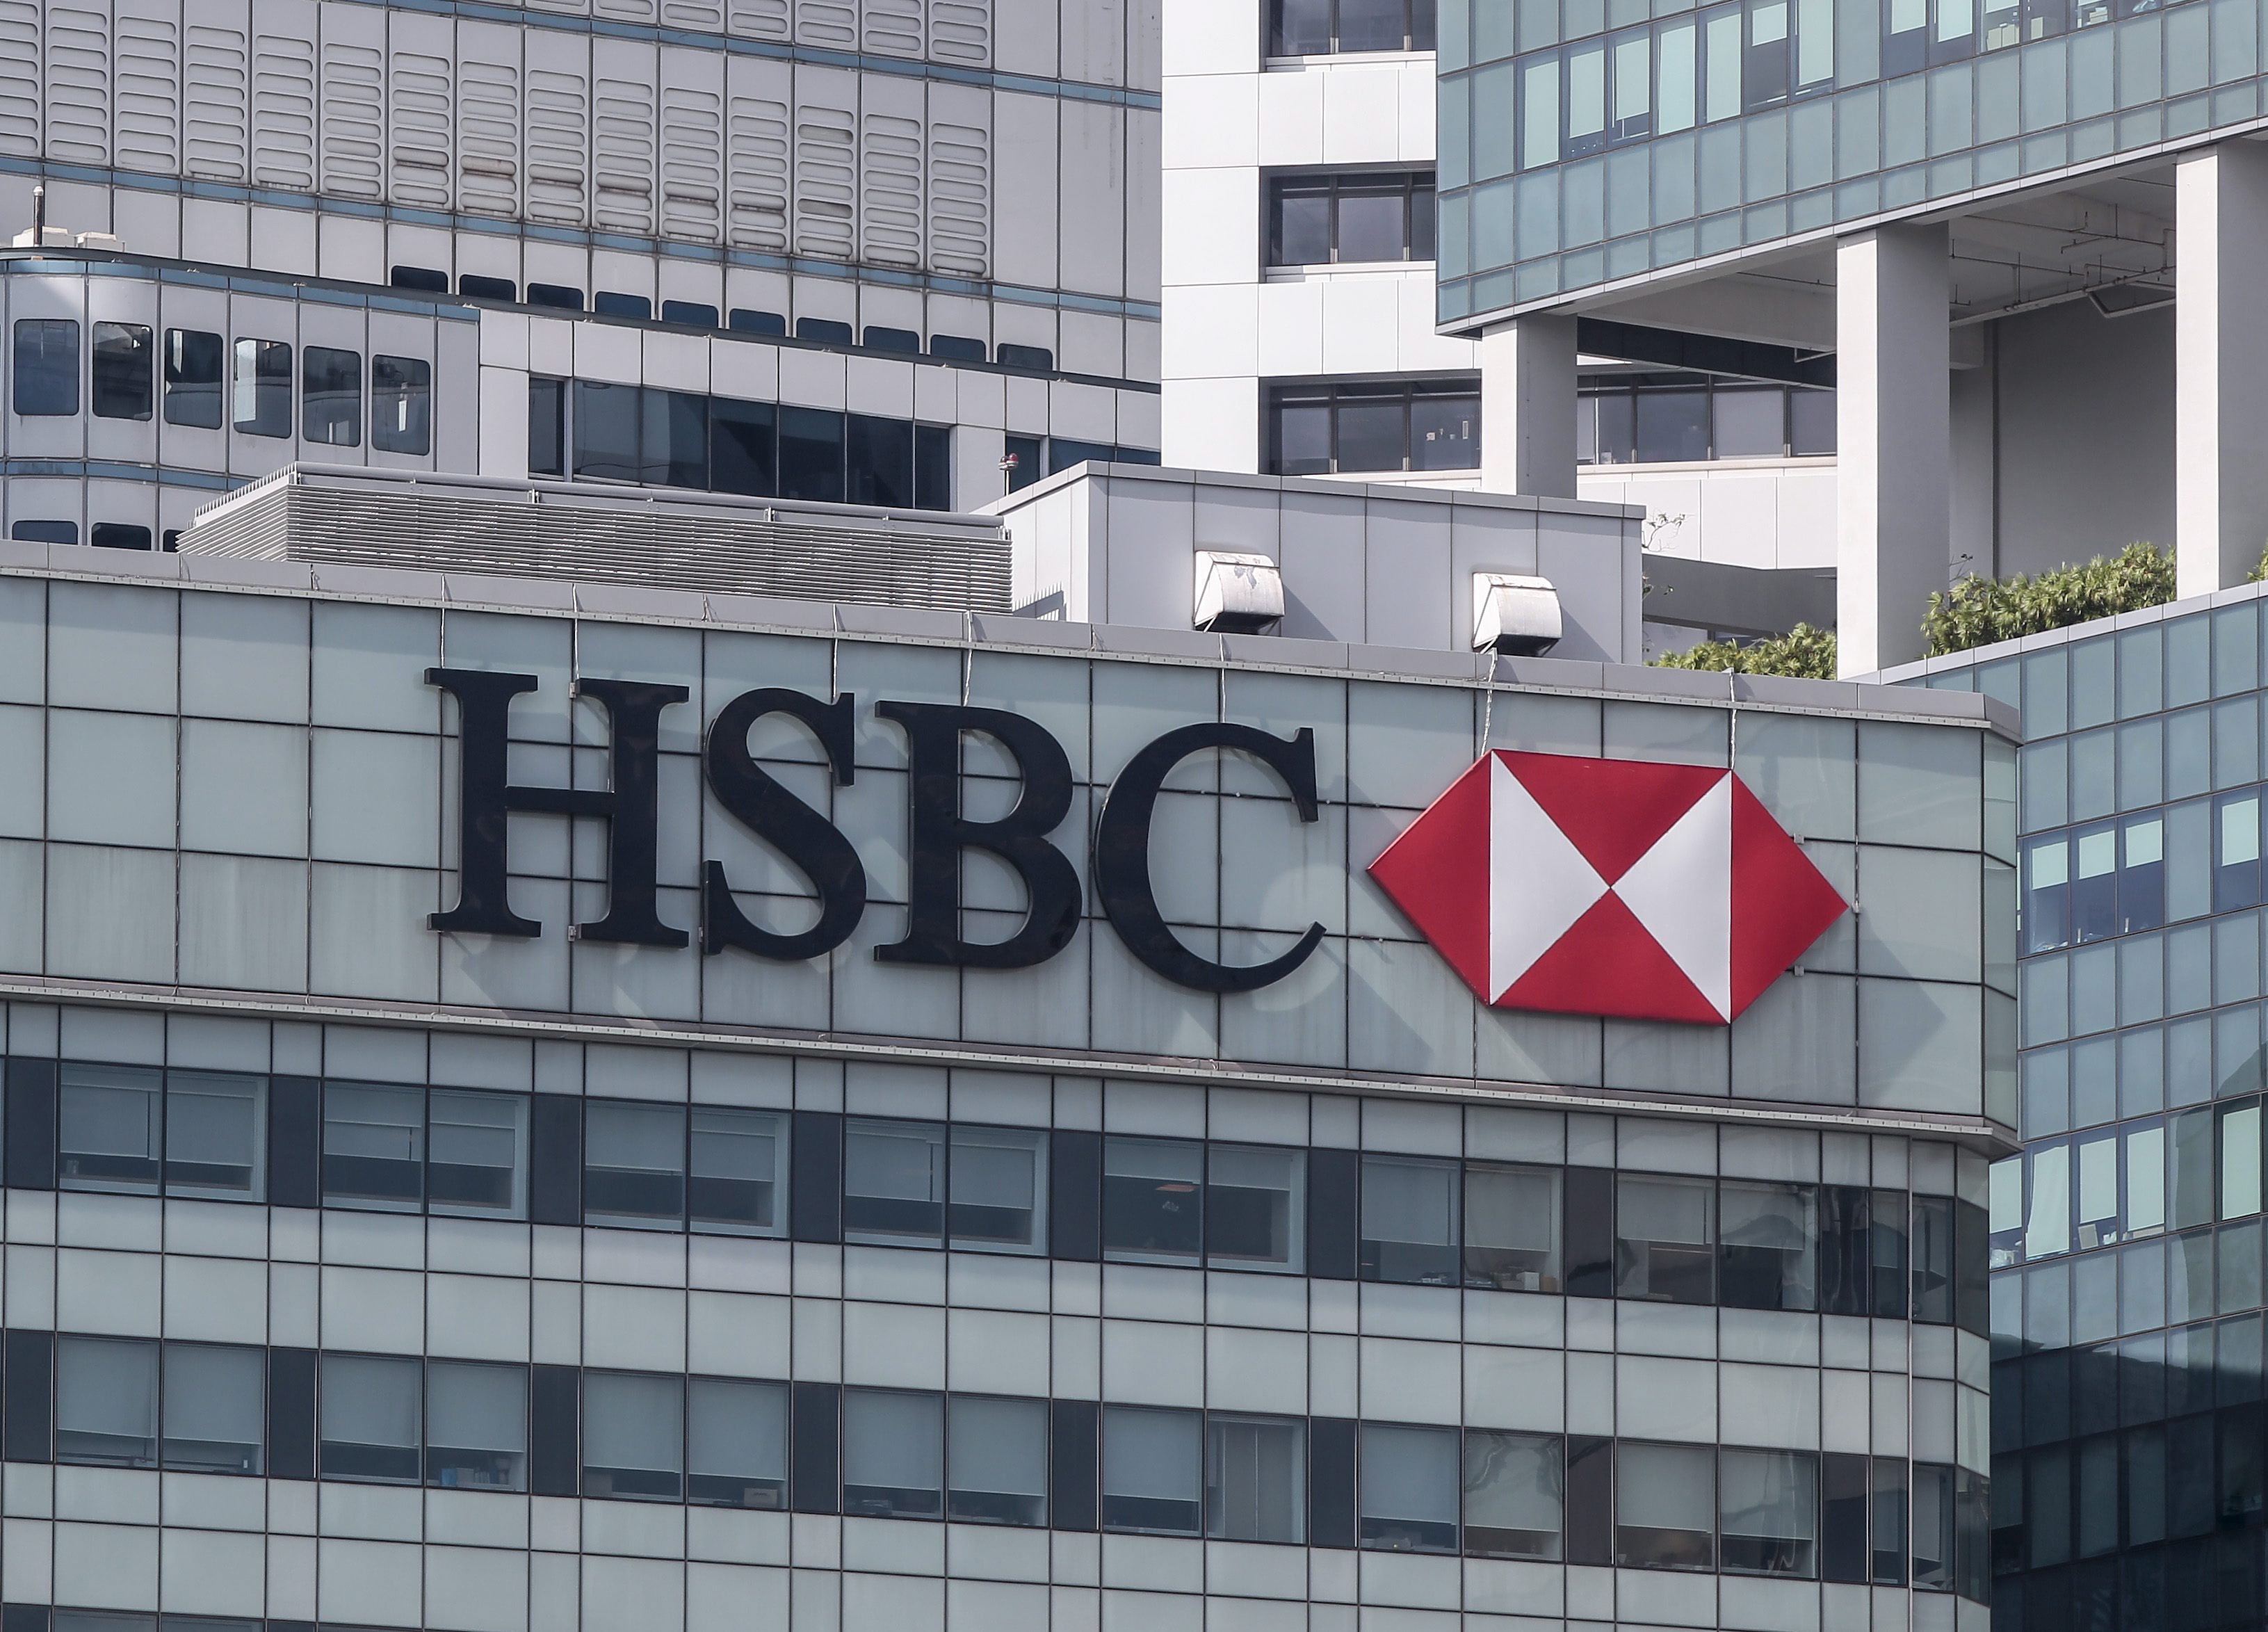 Με 850 απολύσεις ξεκινά η HSBC το σχέδιο των μεγάλων περικοπών